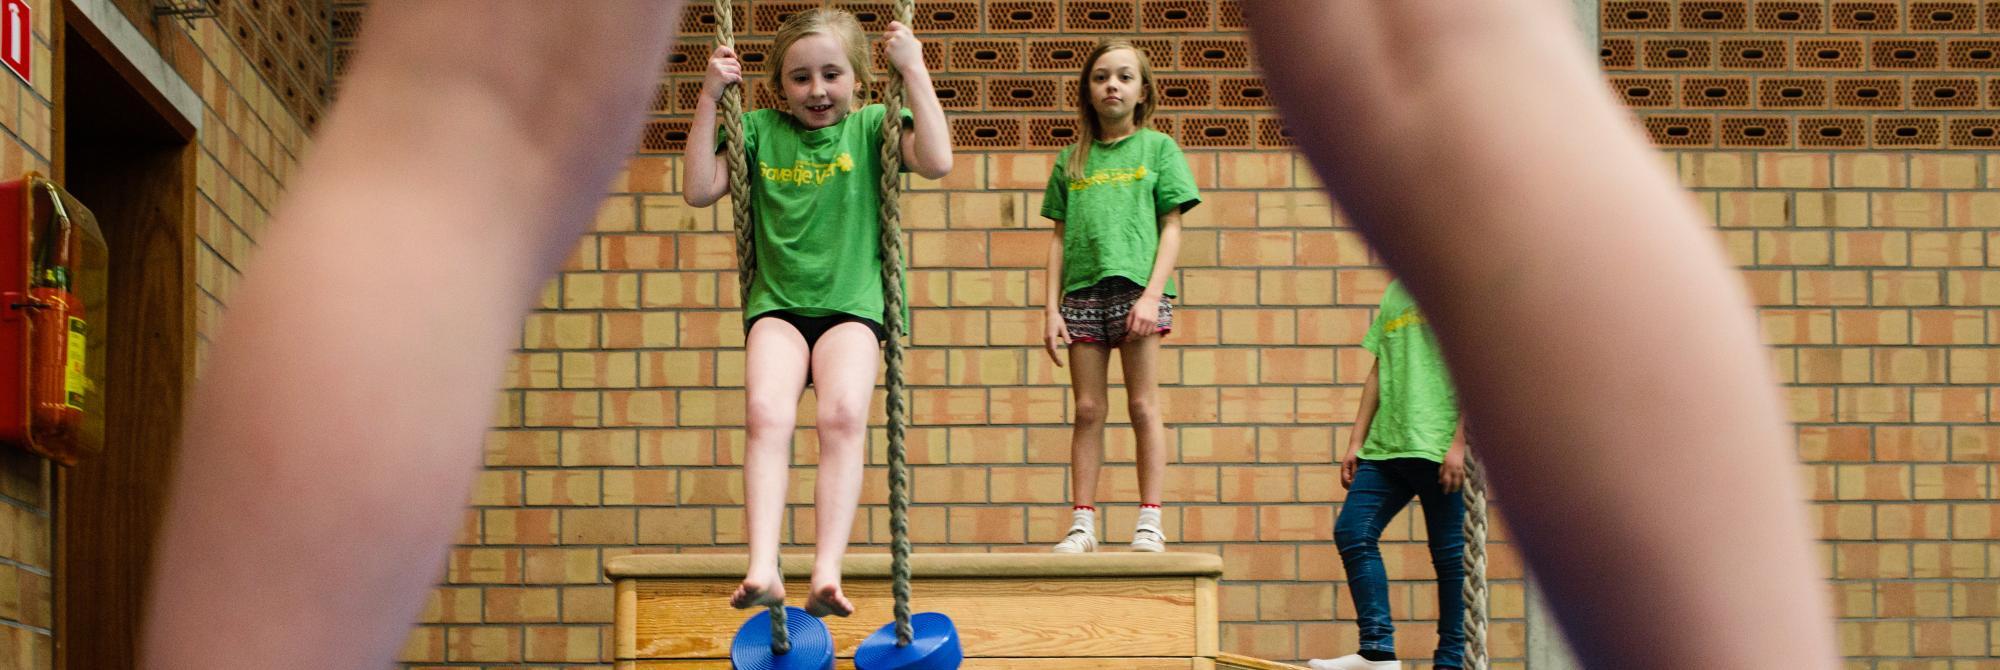 Kinderen zwieren aan touwen, gezien door benen van ander kind